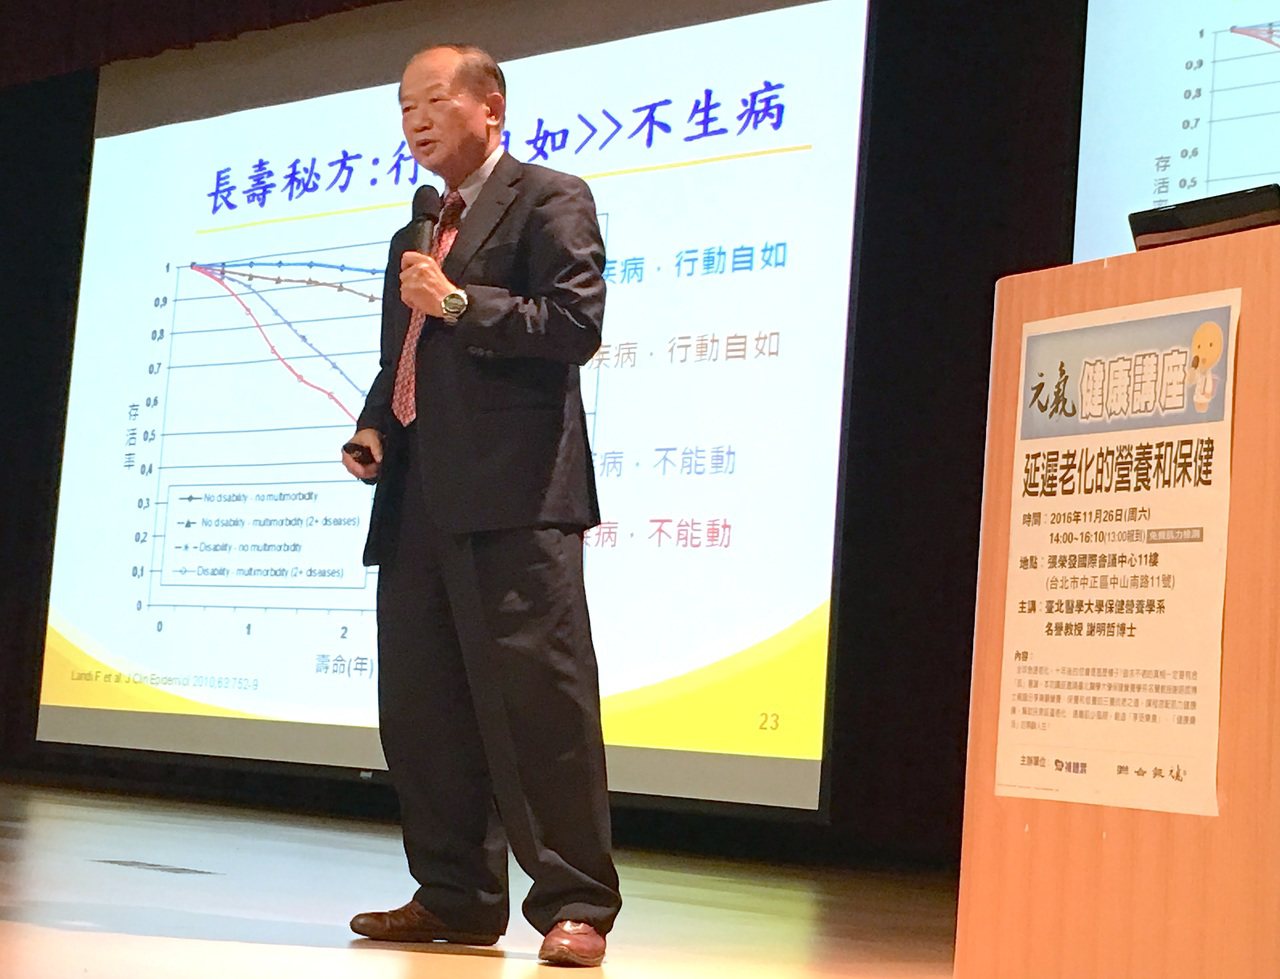 聯合報元氣健康講座今邀請台北醫學大學保健營養學系名譽教授謝明哲分享「延緩老化的營養與保健」之道。記者江慧珺／攝影